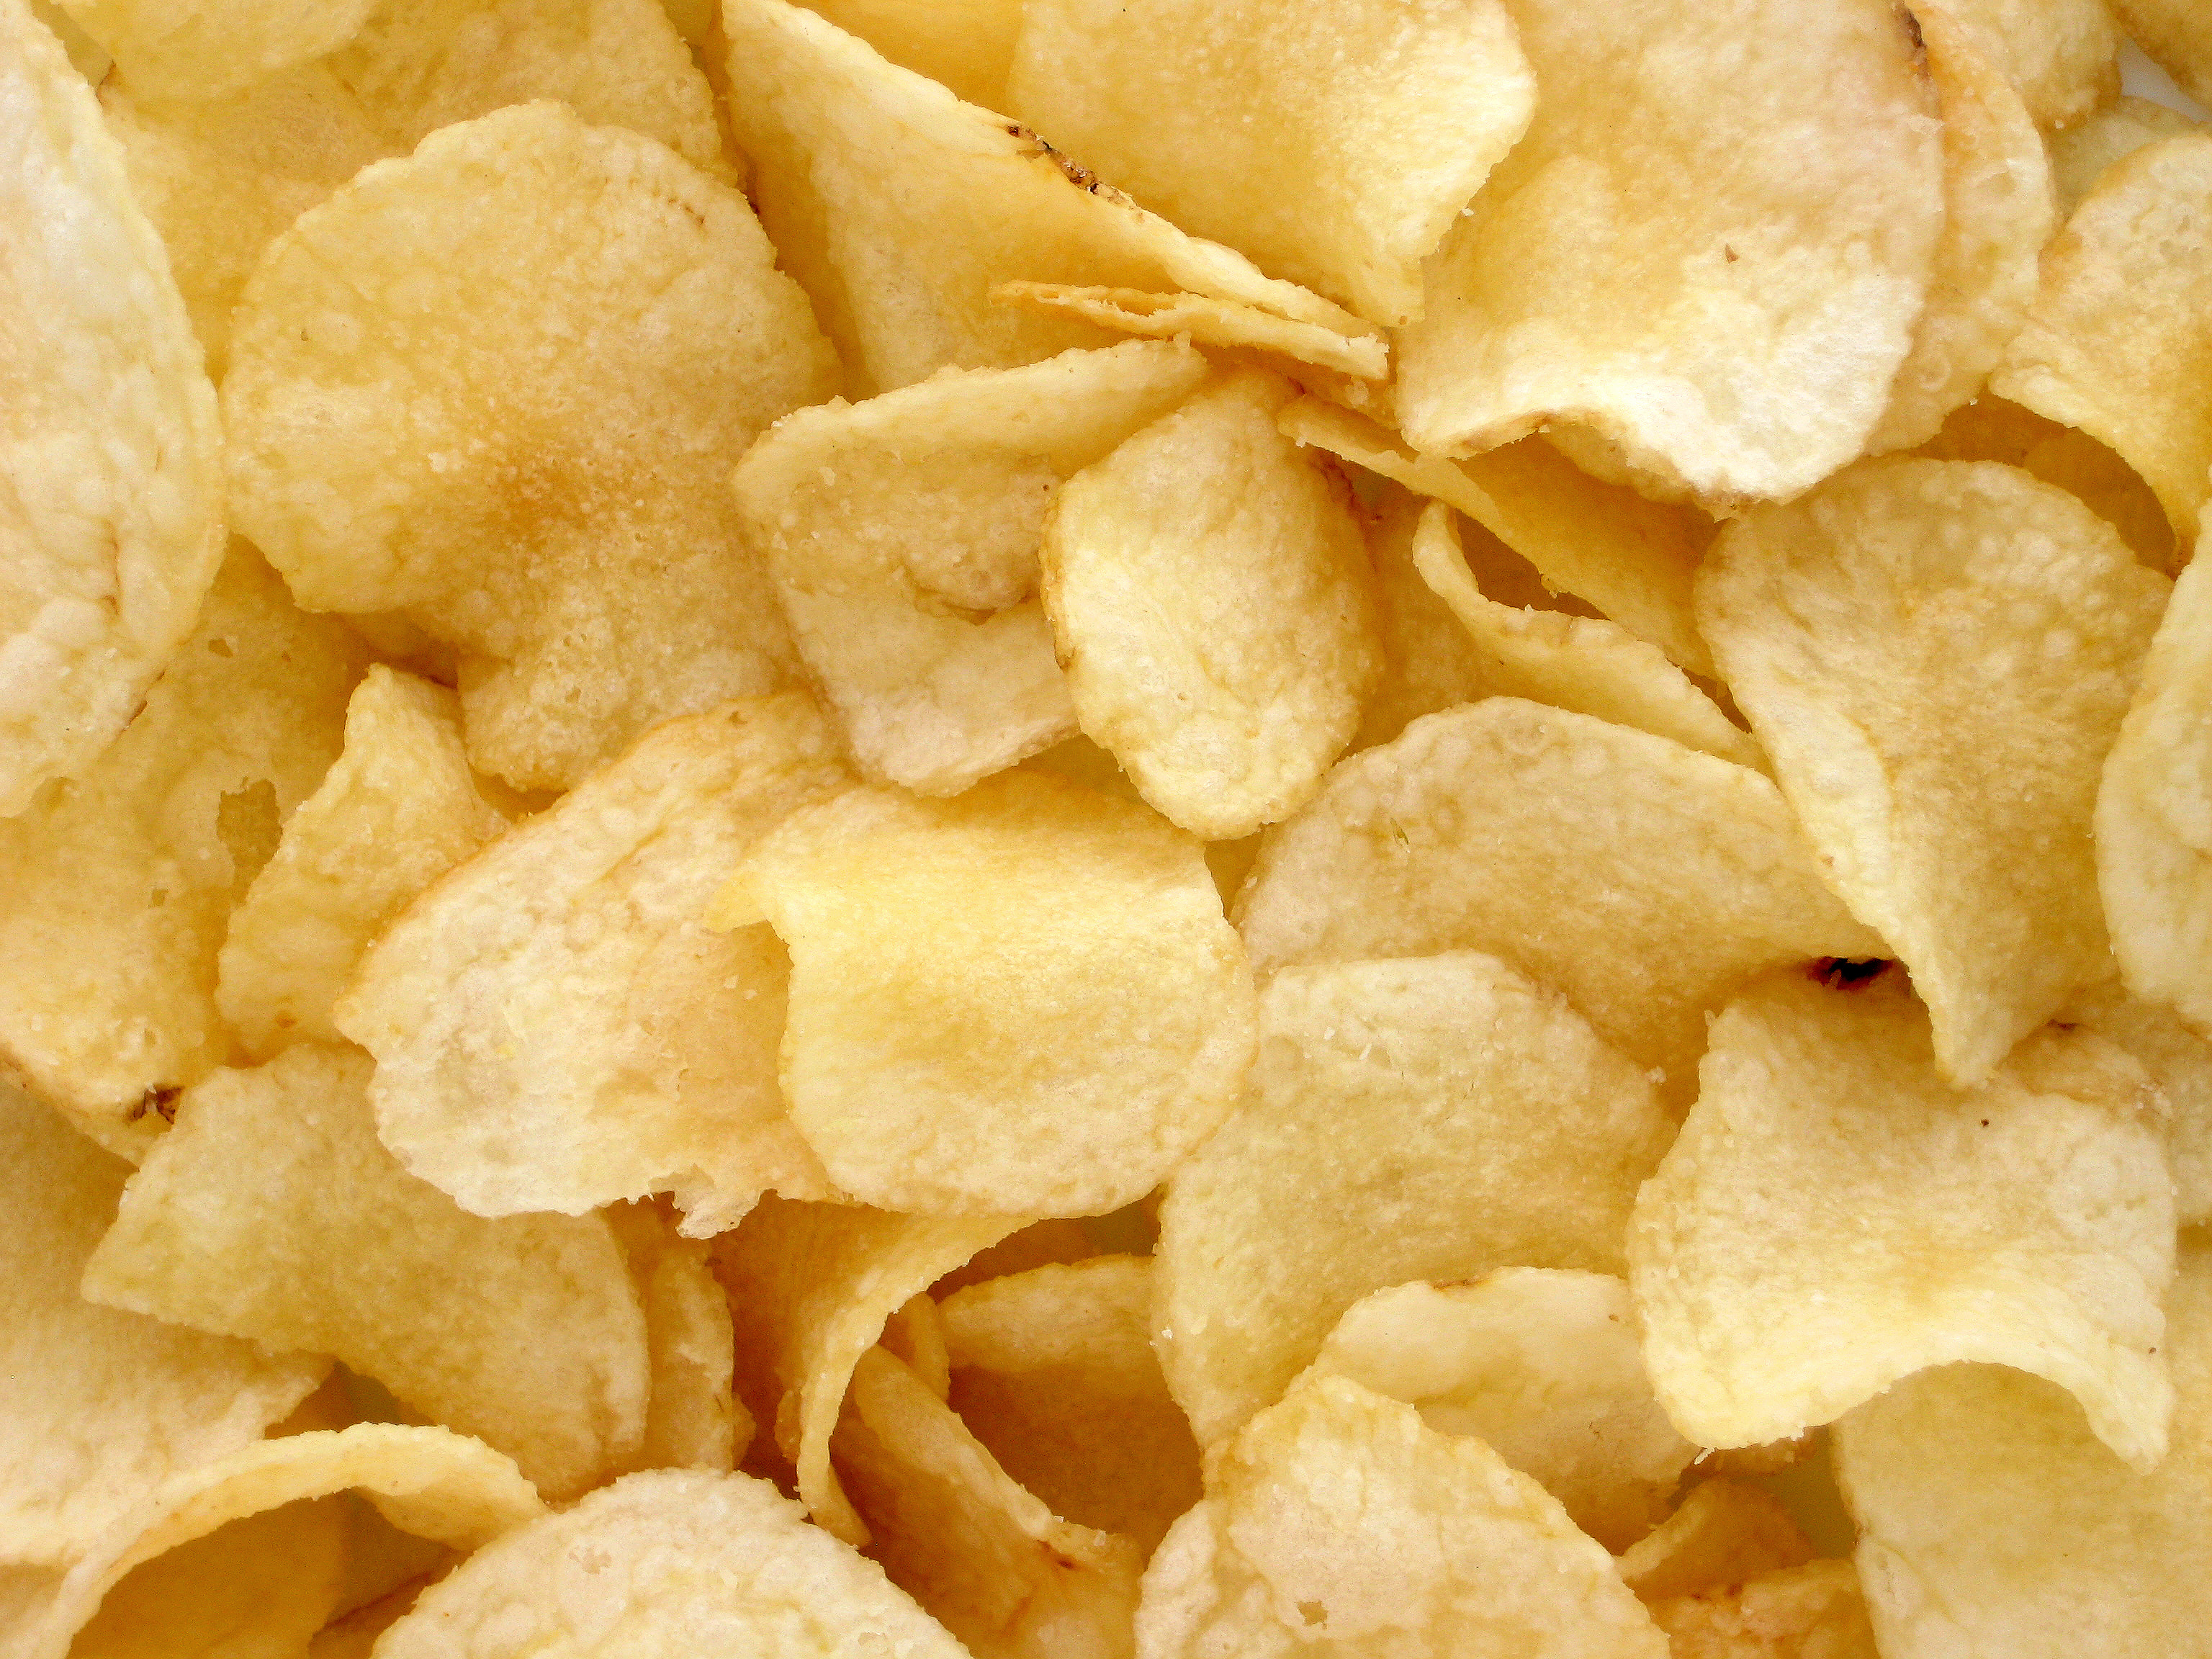 Afbeeldingsresultaat voor potato chips